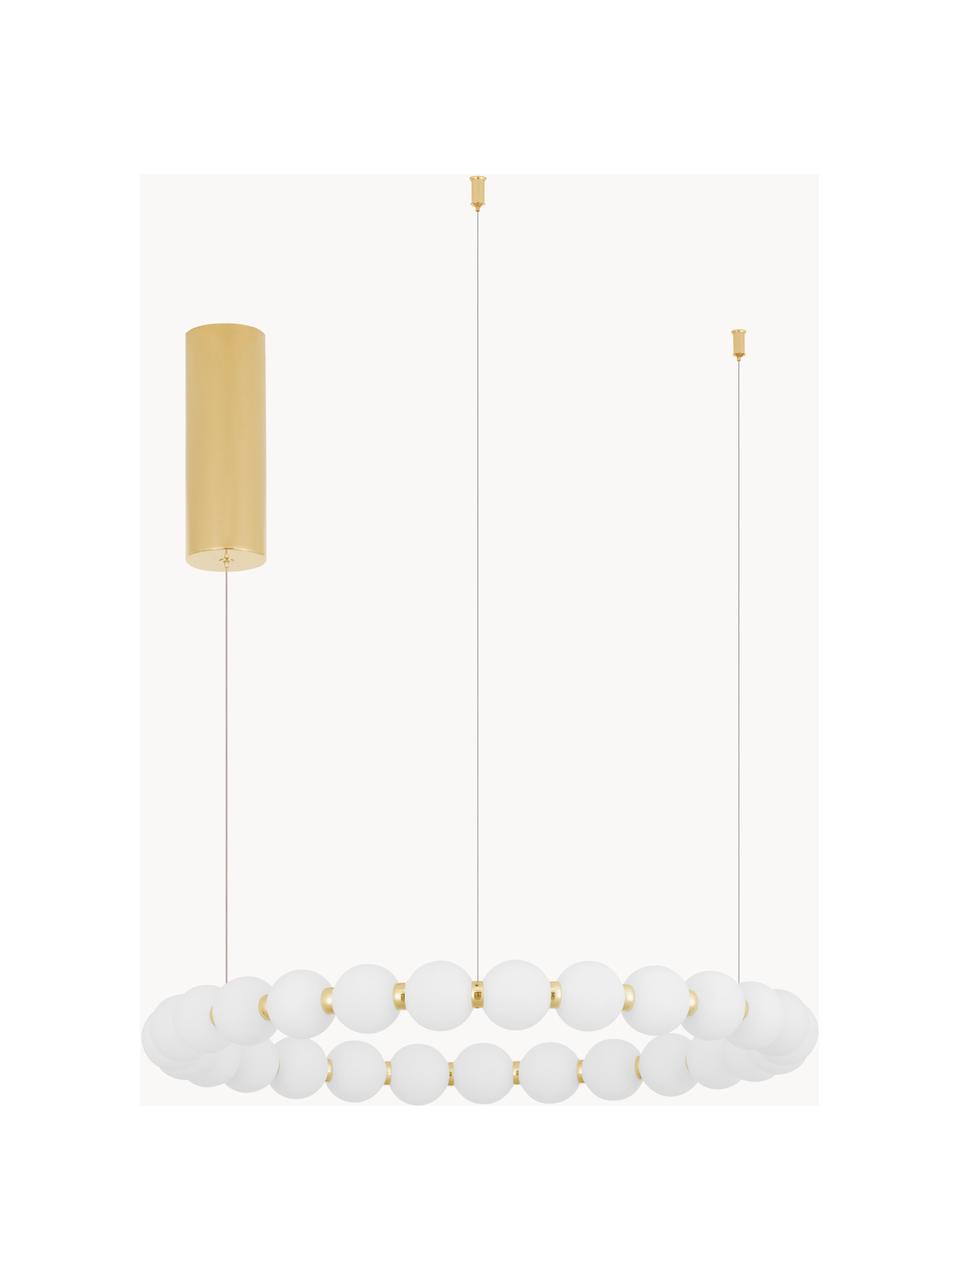 Große dimmbare LED-Pendelleuchte Perla, verschiedene Größen, Goldfarben, Weiß, Ø 62 cm